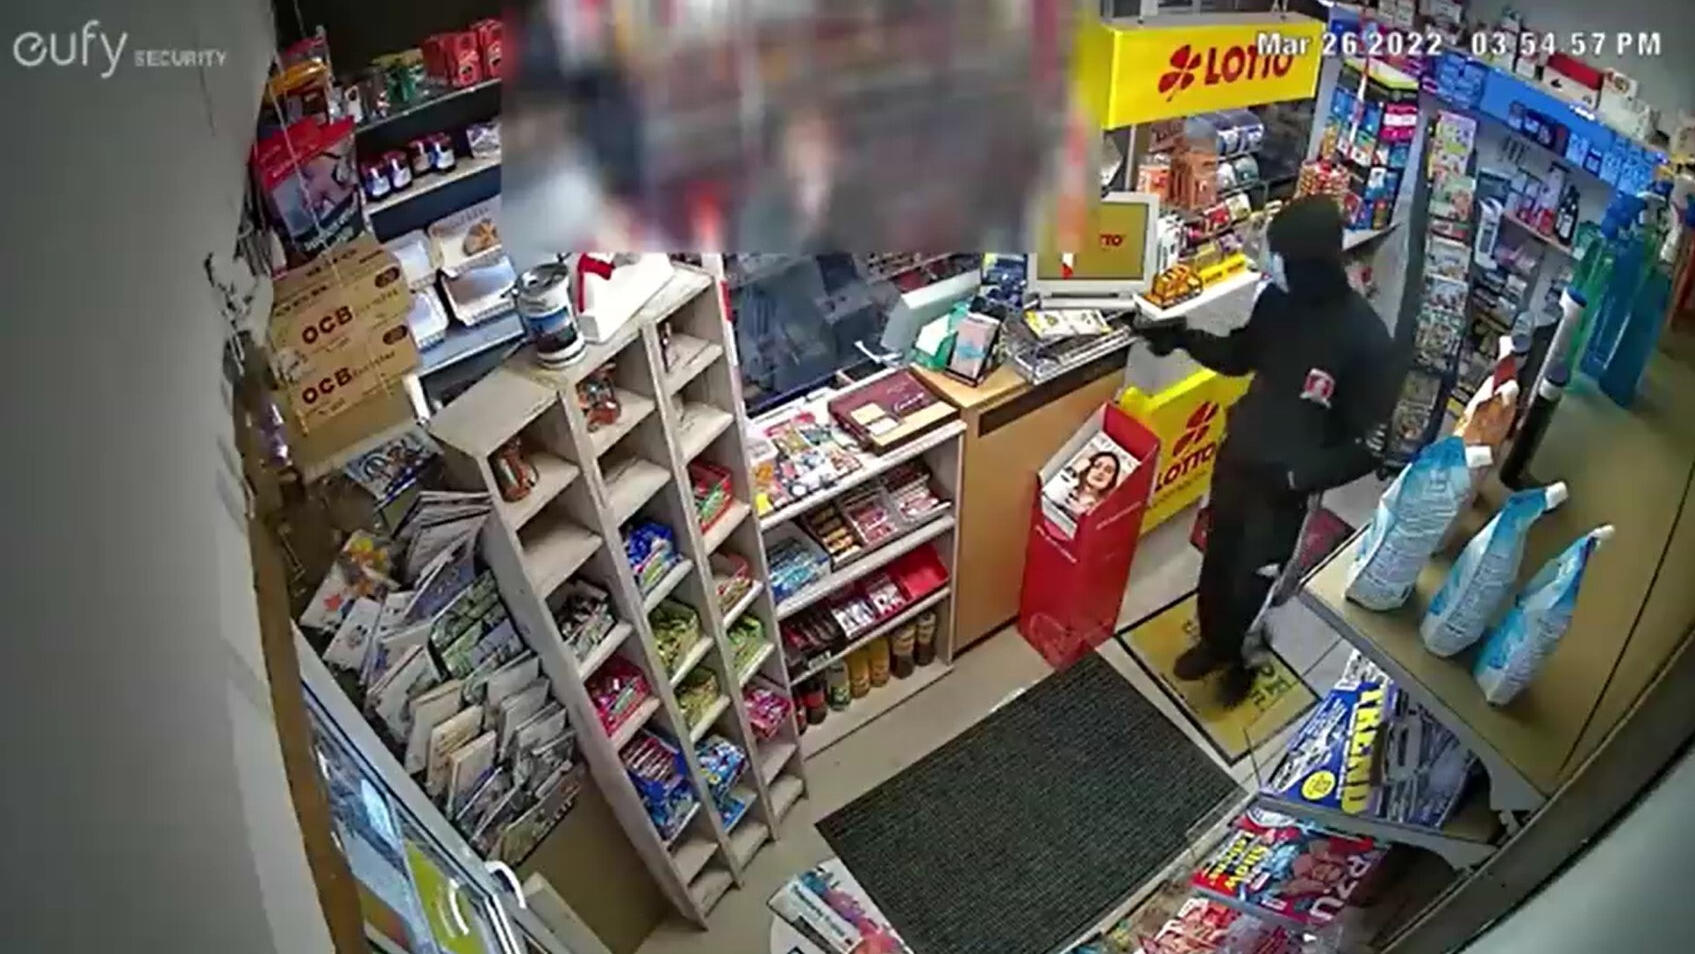 Kiosk-Überfall in Delmenhorst: Räuber richtet Waffe auf Verk Er schreit: "Mach keine Faxen!"